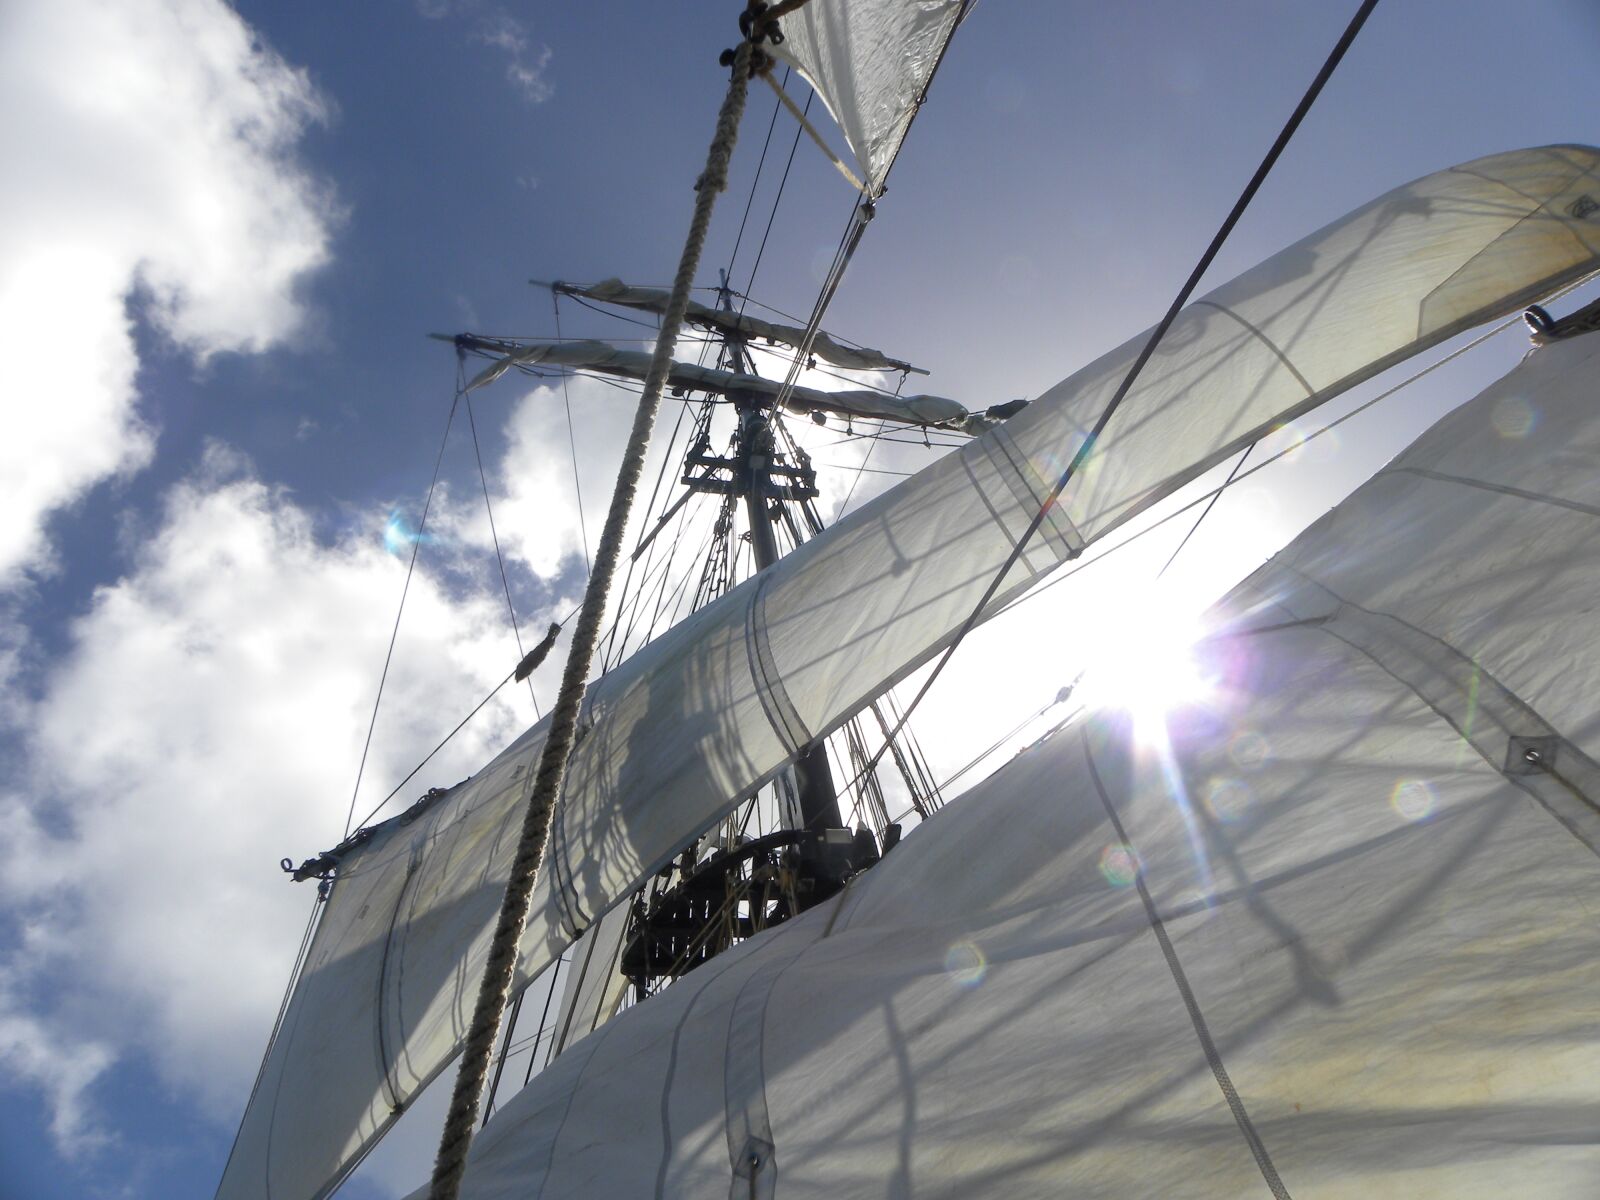 Nikon Coolpix P90 sample photo. Tall ship, sails, sunlight photography